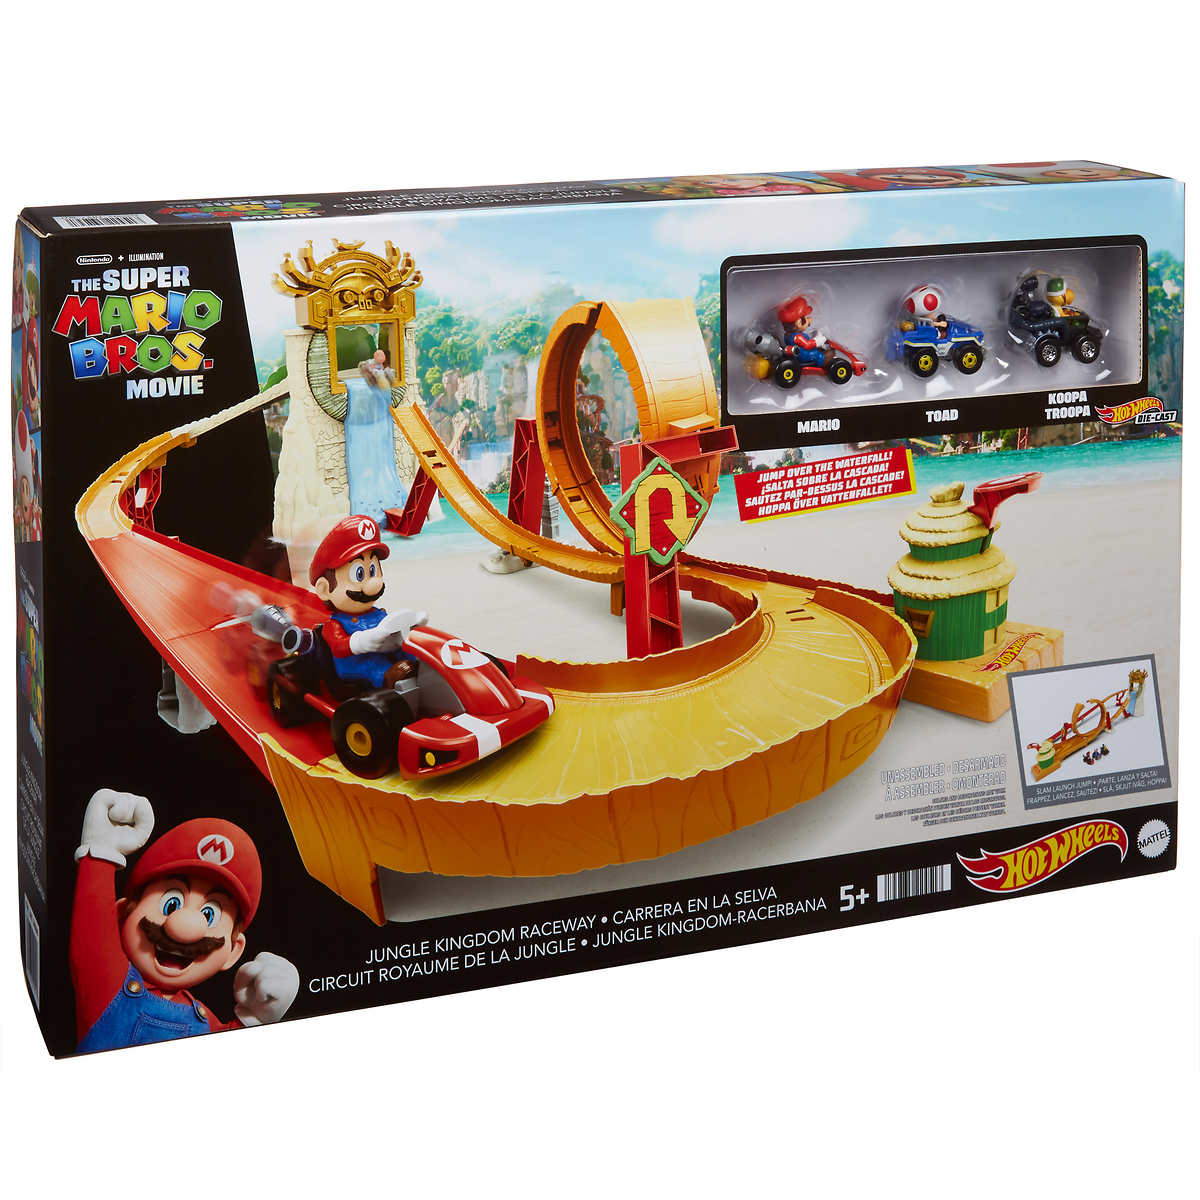  Hot Wheels Mattel Mario Kart Lite Circuit Playset (Nintendo) :  Toys & Games